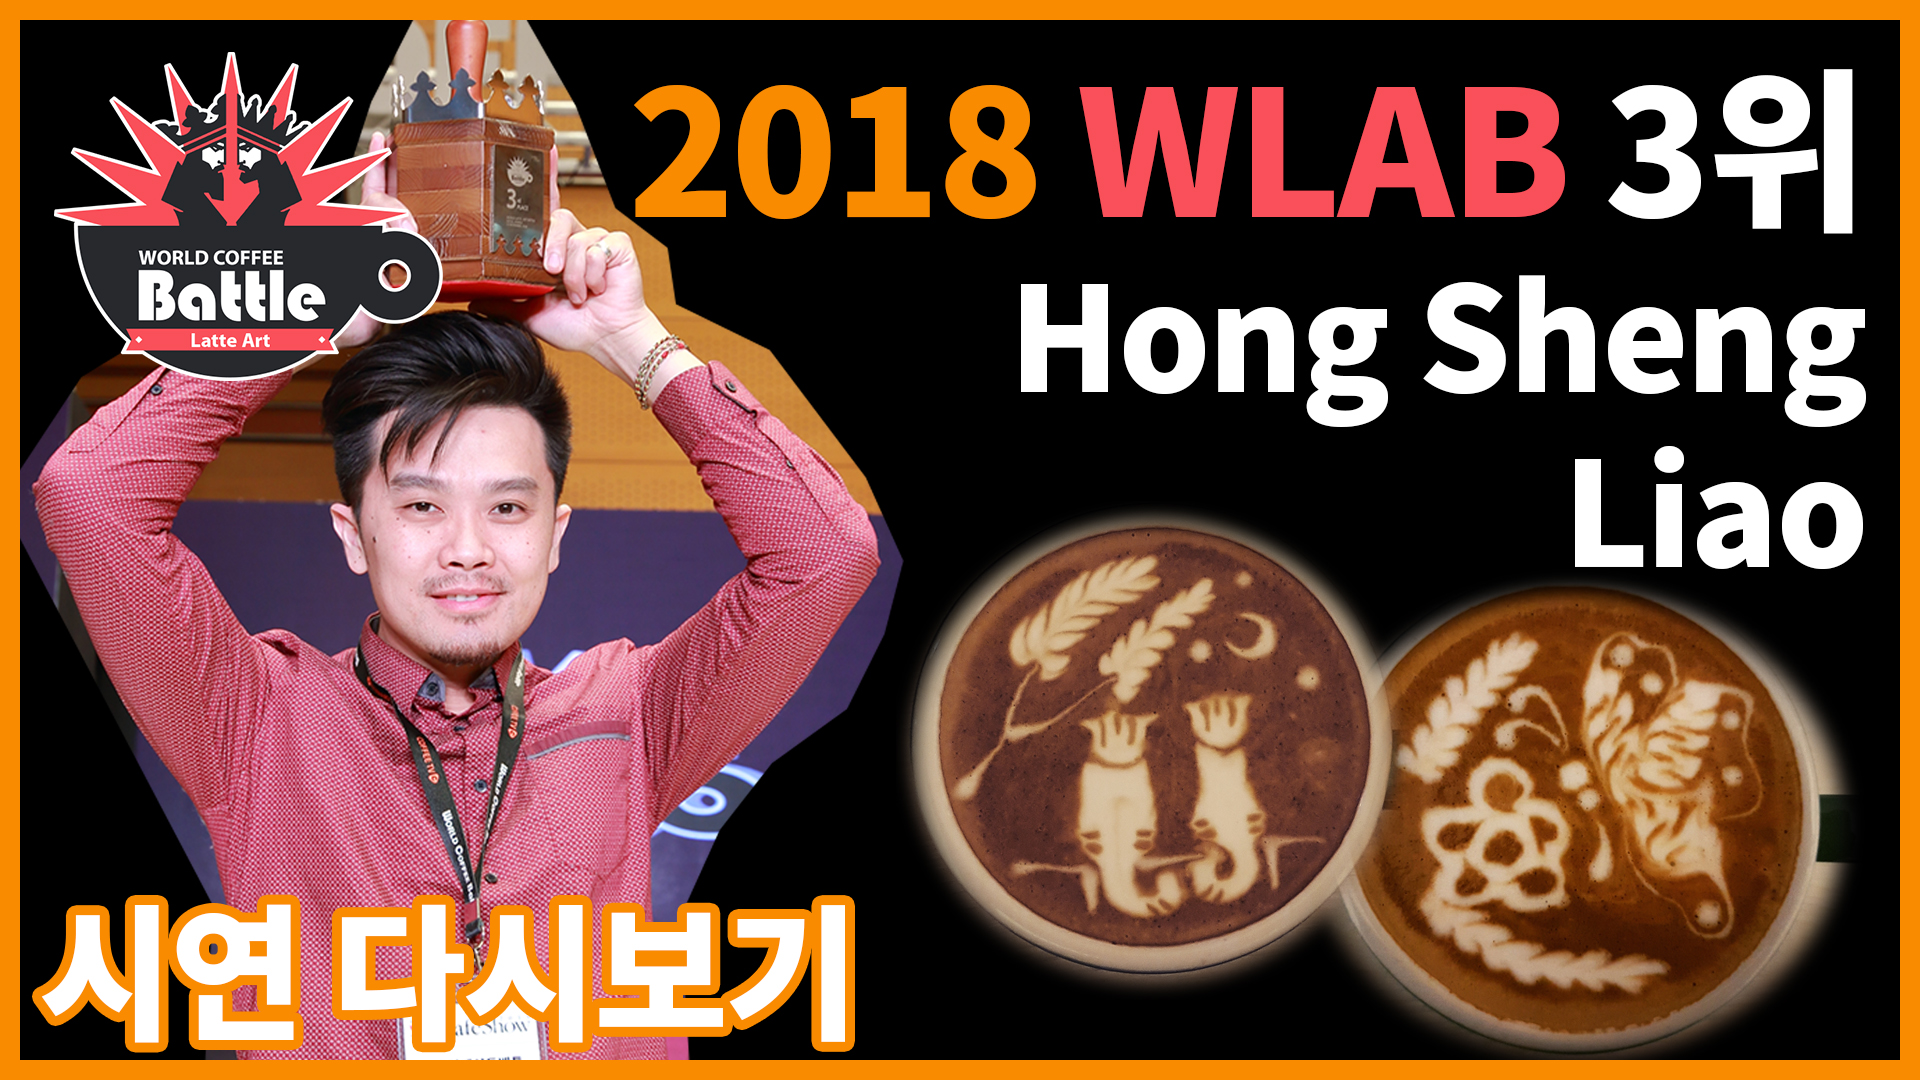 2018 월드라떼아트배틀 3위, Hong Sheng Liao 선수의 시연!